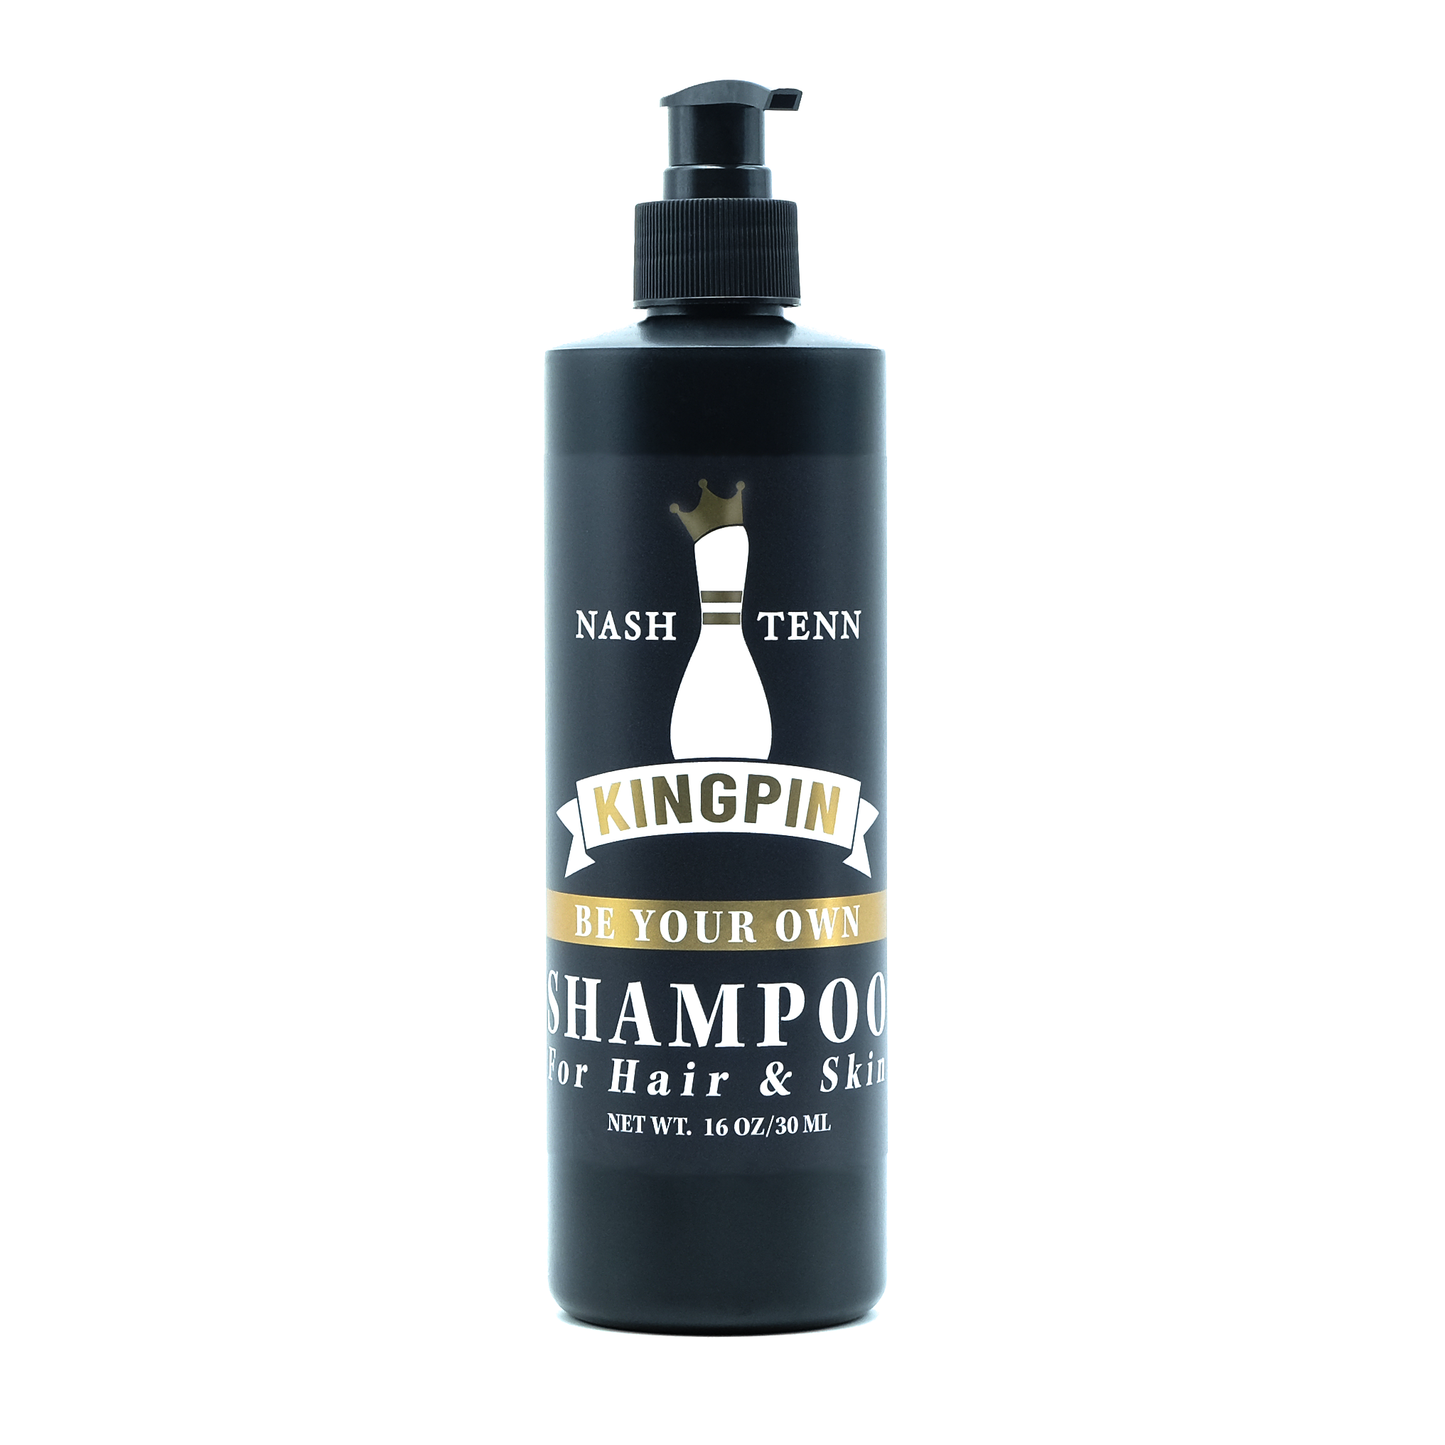 Shampoo For Hair & Skin